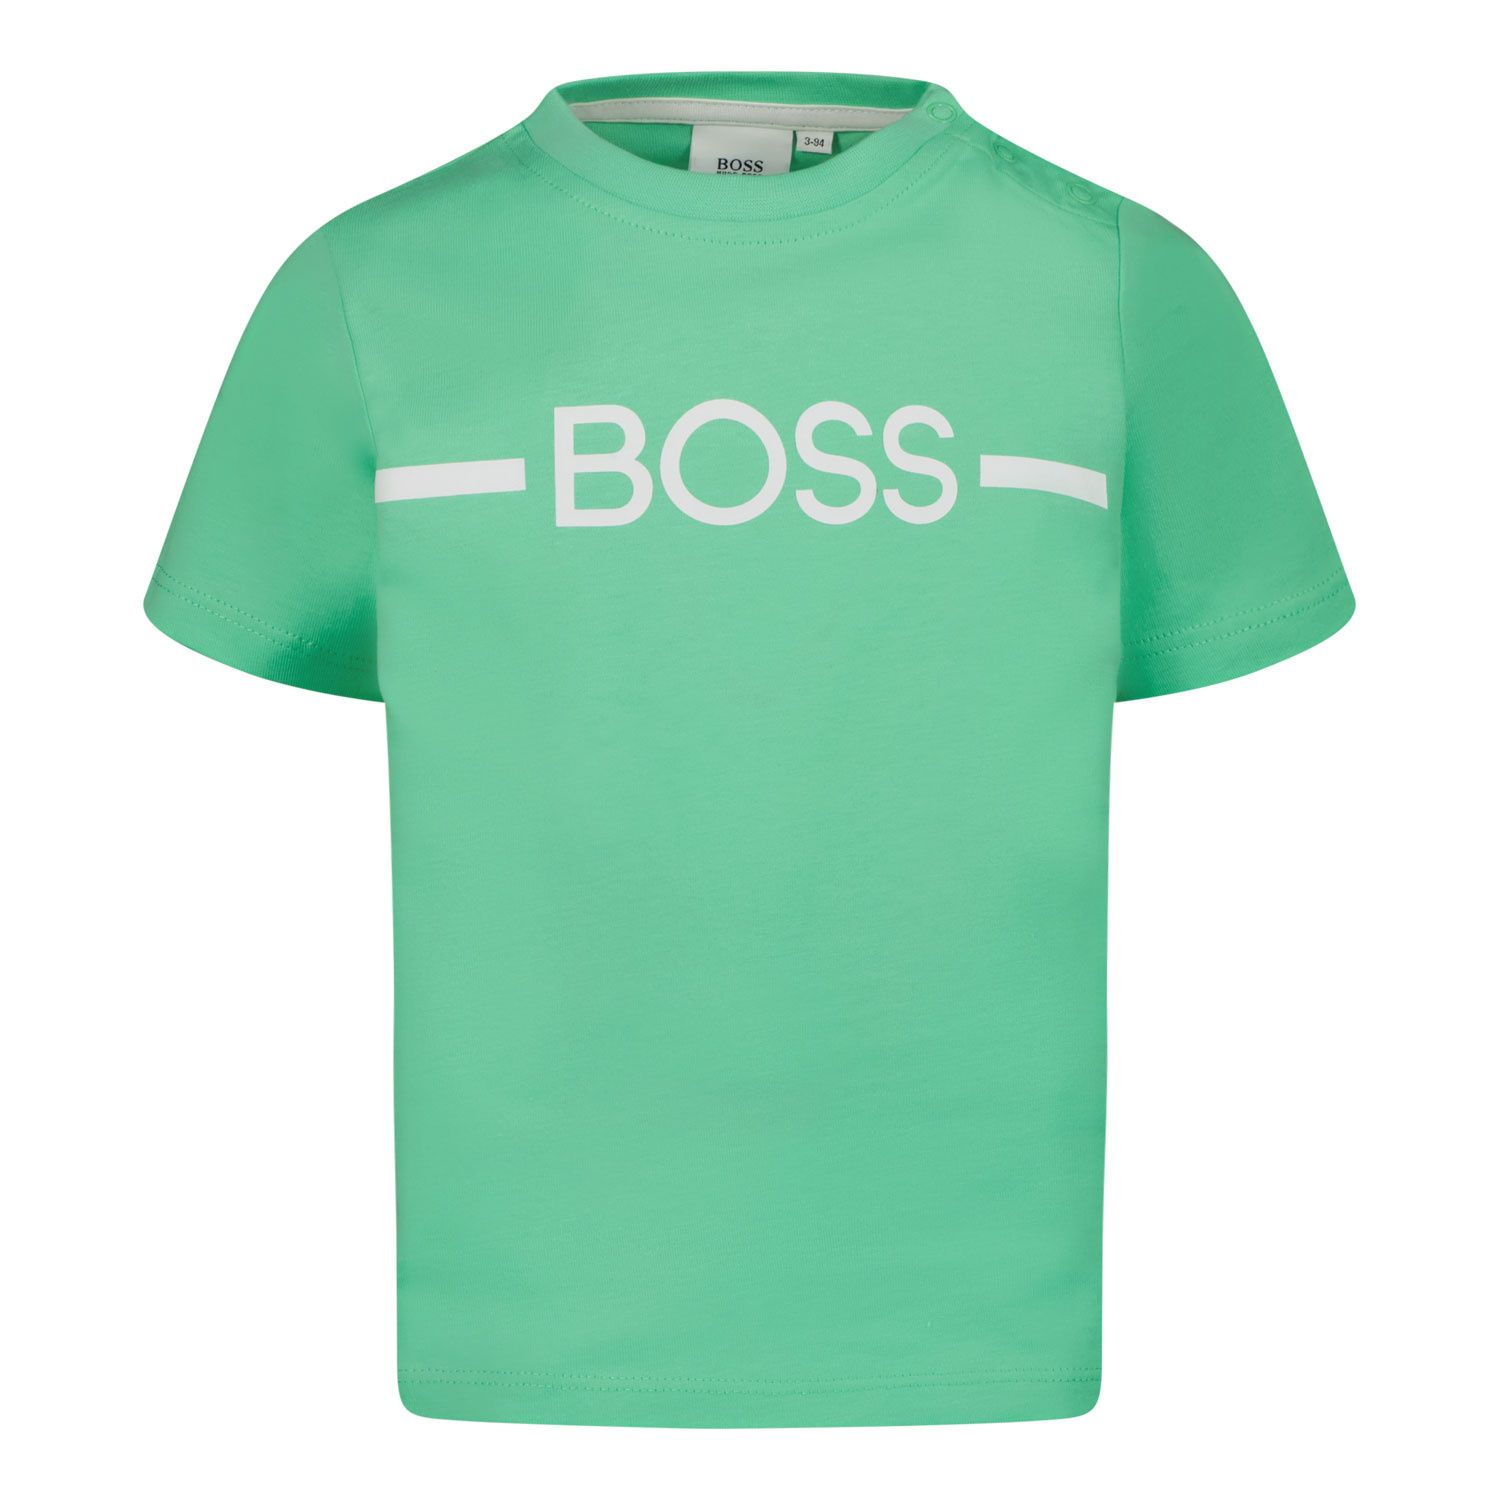 Afbeelding van Boss J05908 baby t-shirt groen